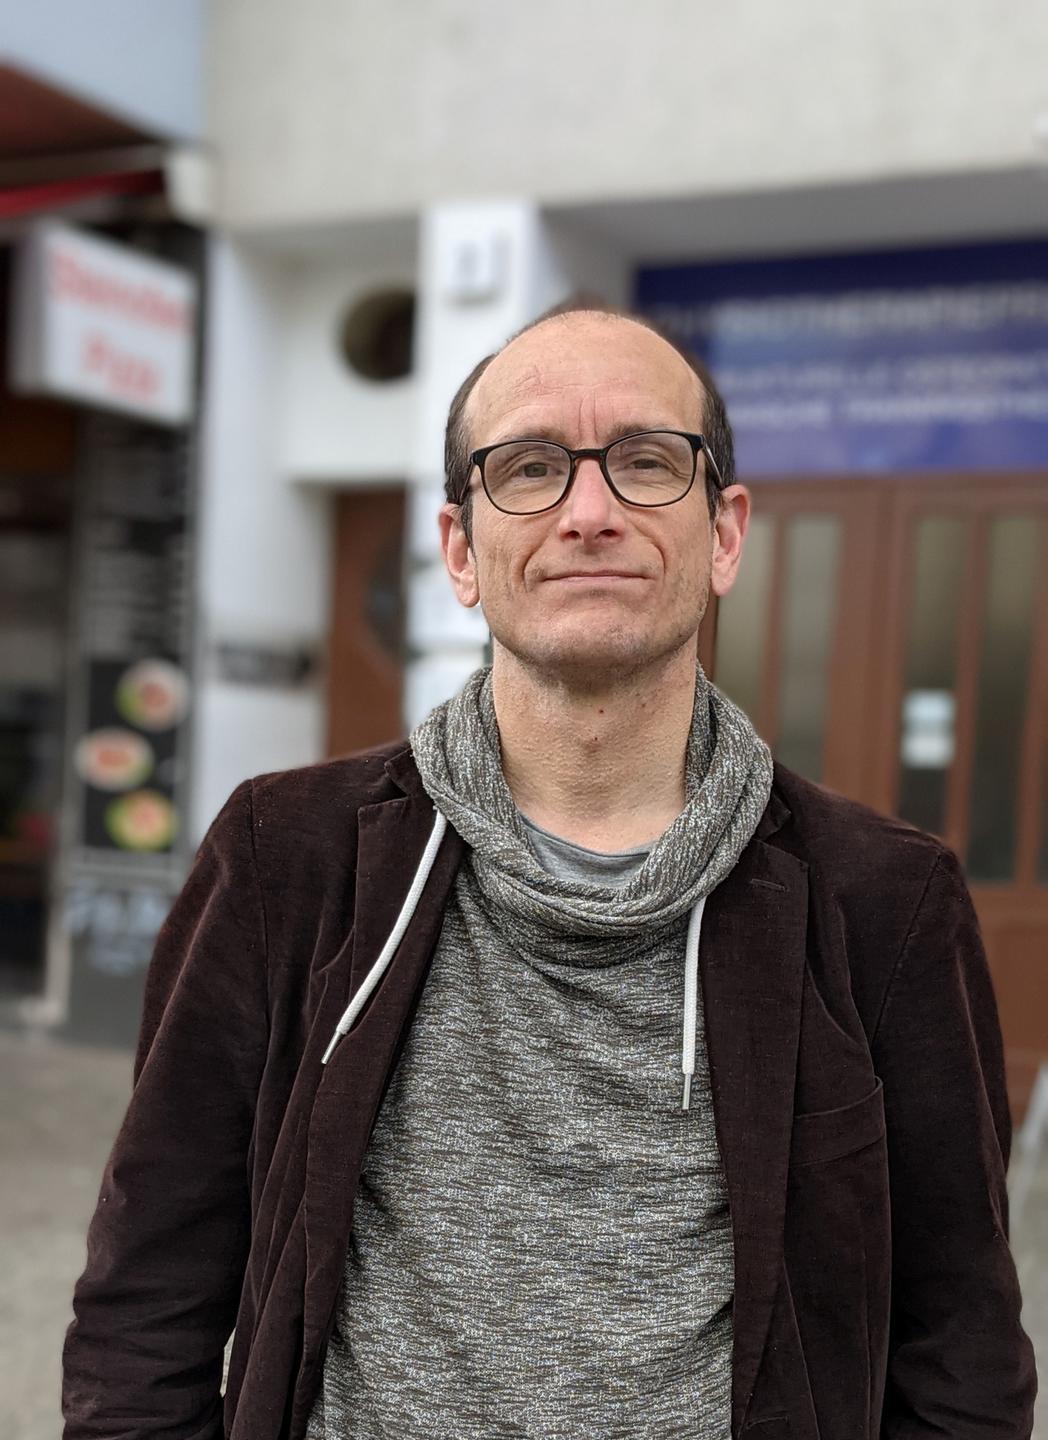 Portrait eines Mannes mit kurzen Haaren und Brille. Es ist der Feature-Redakteur Ingo Kottkamp.